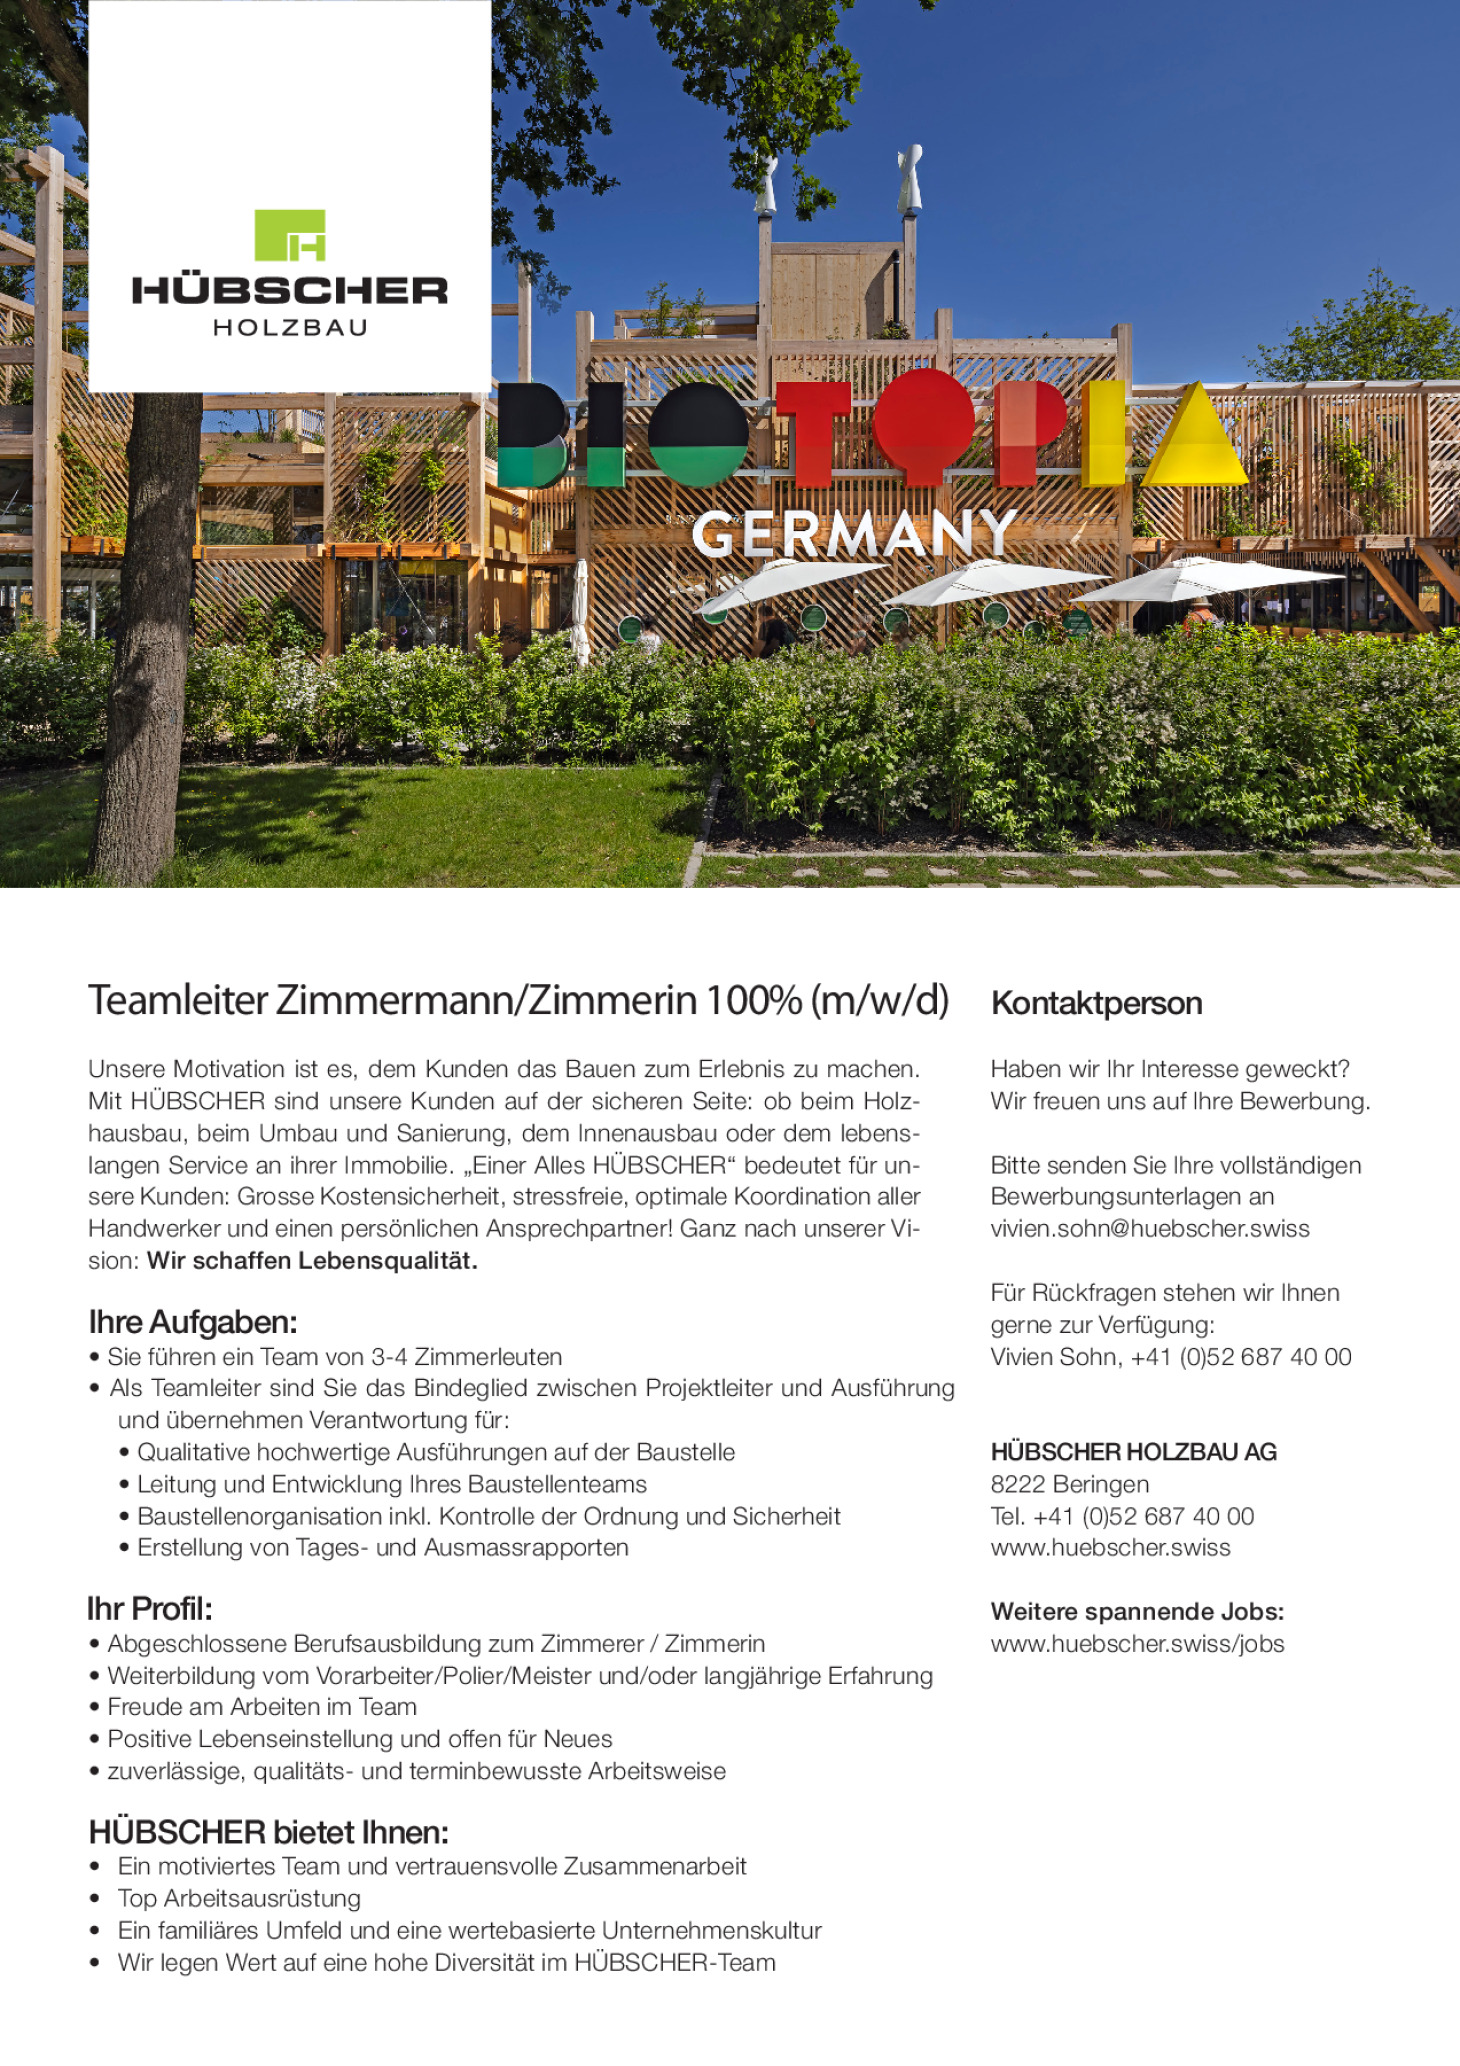 Teamleiter Zimmermann/Zimmerin 100% (m/w/d)